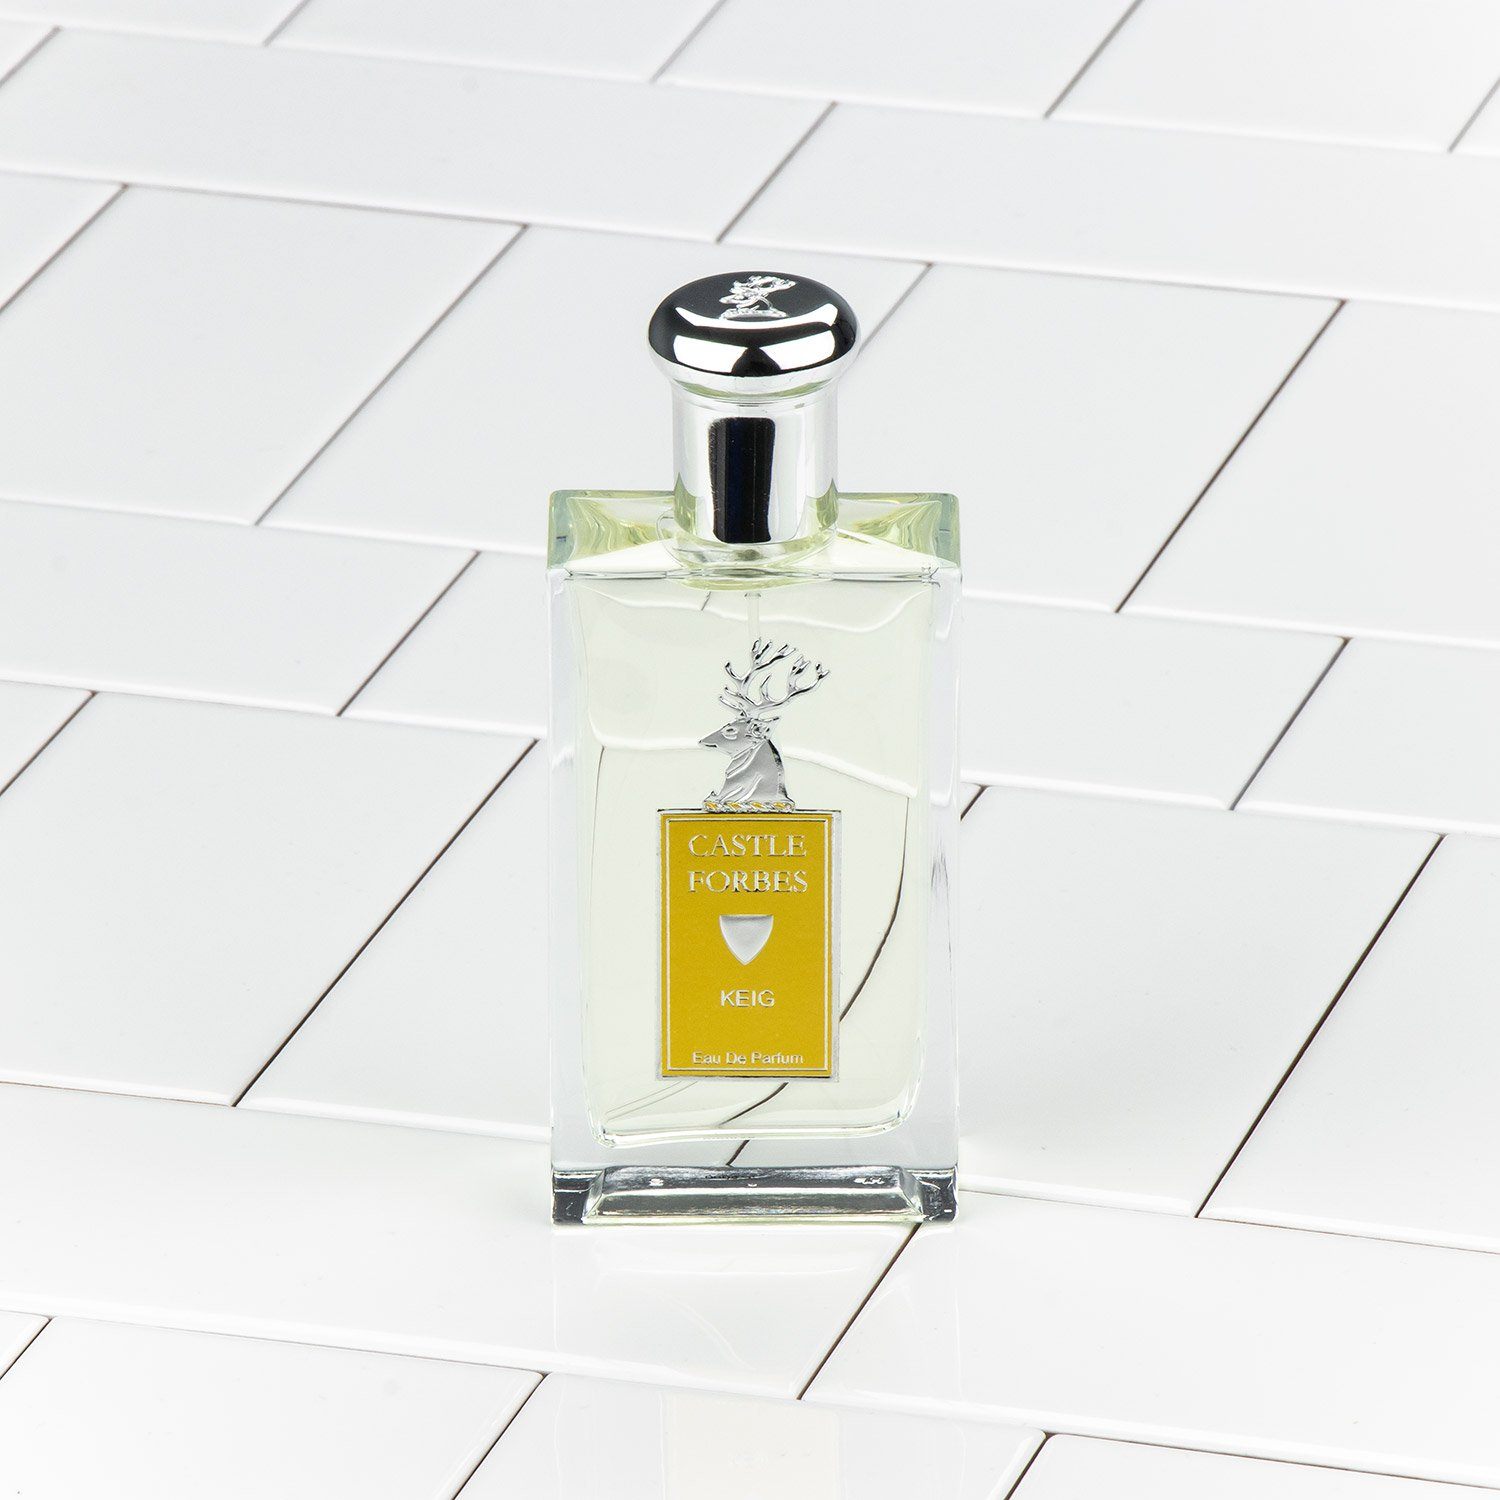 Castle Forbes Keig Eau De Parfum - Natural Spray 100ml - 3.4oz